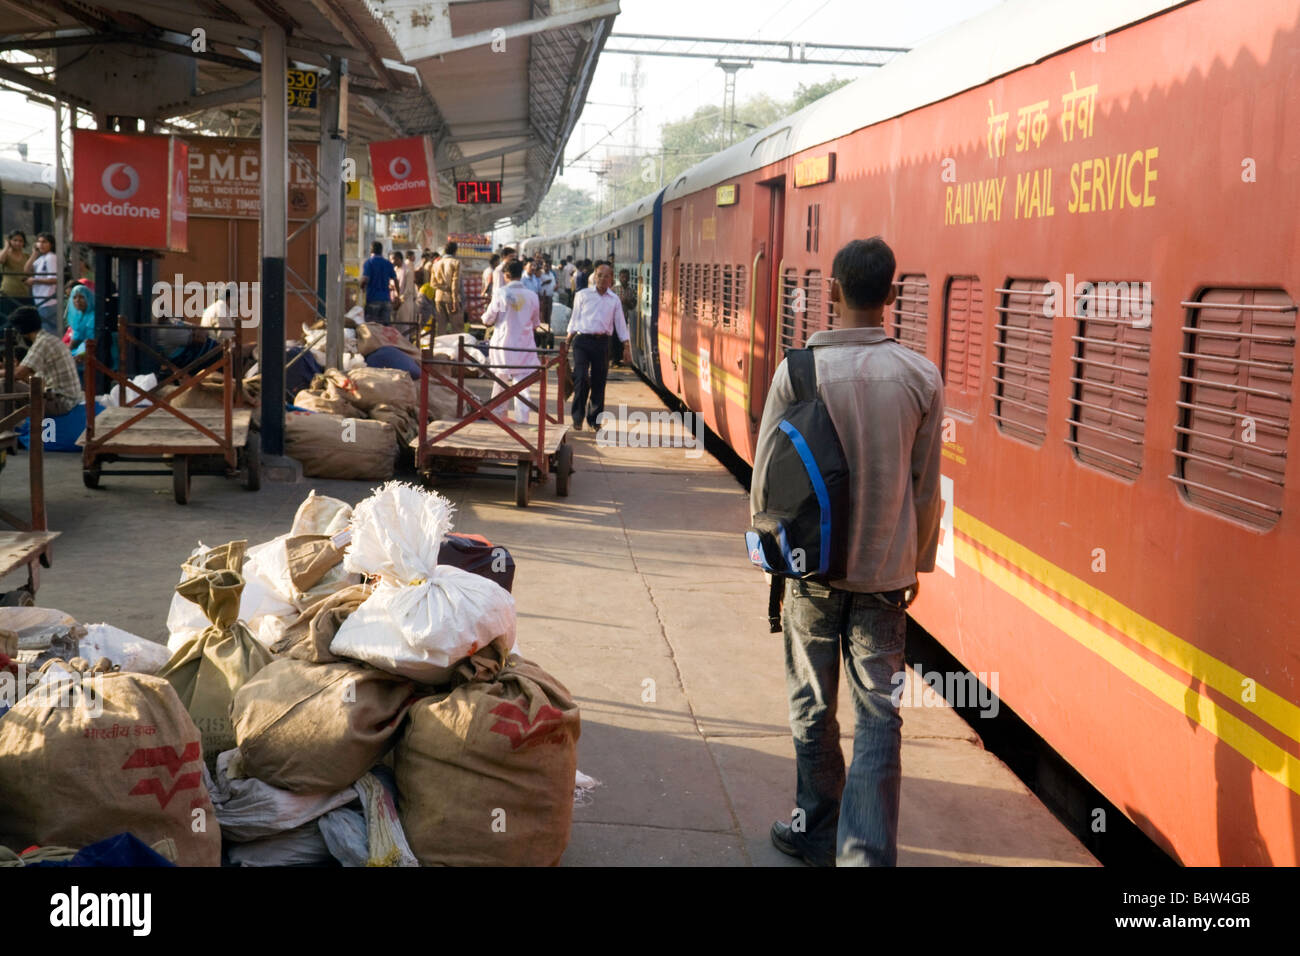 Le train postal en attente à la plate-forme, la gare ferroviaire de New Delhi, Inde, Asie Indian Railways Banque D'Images